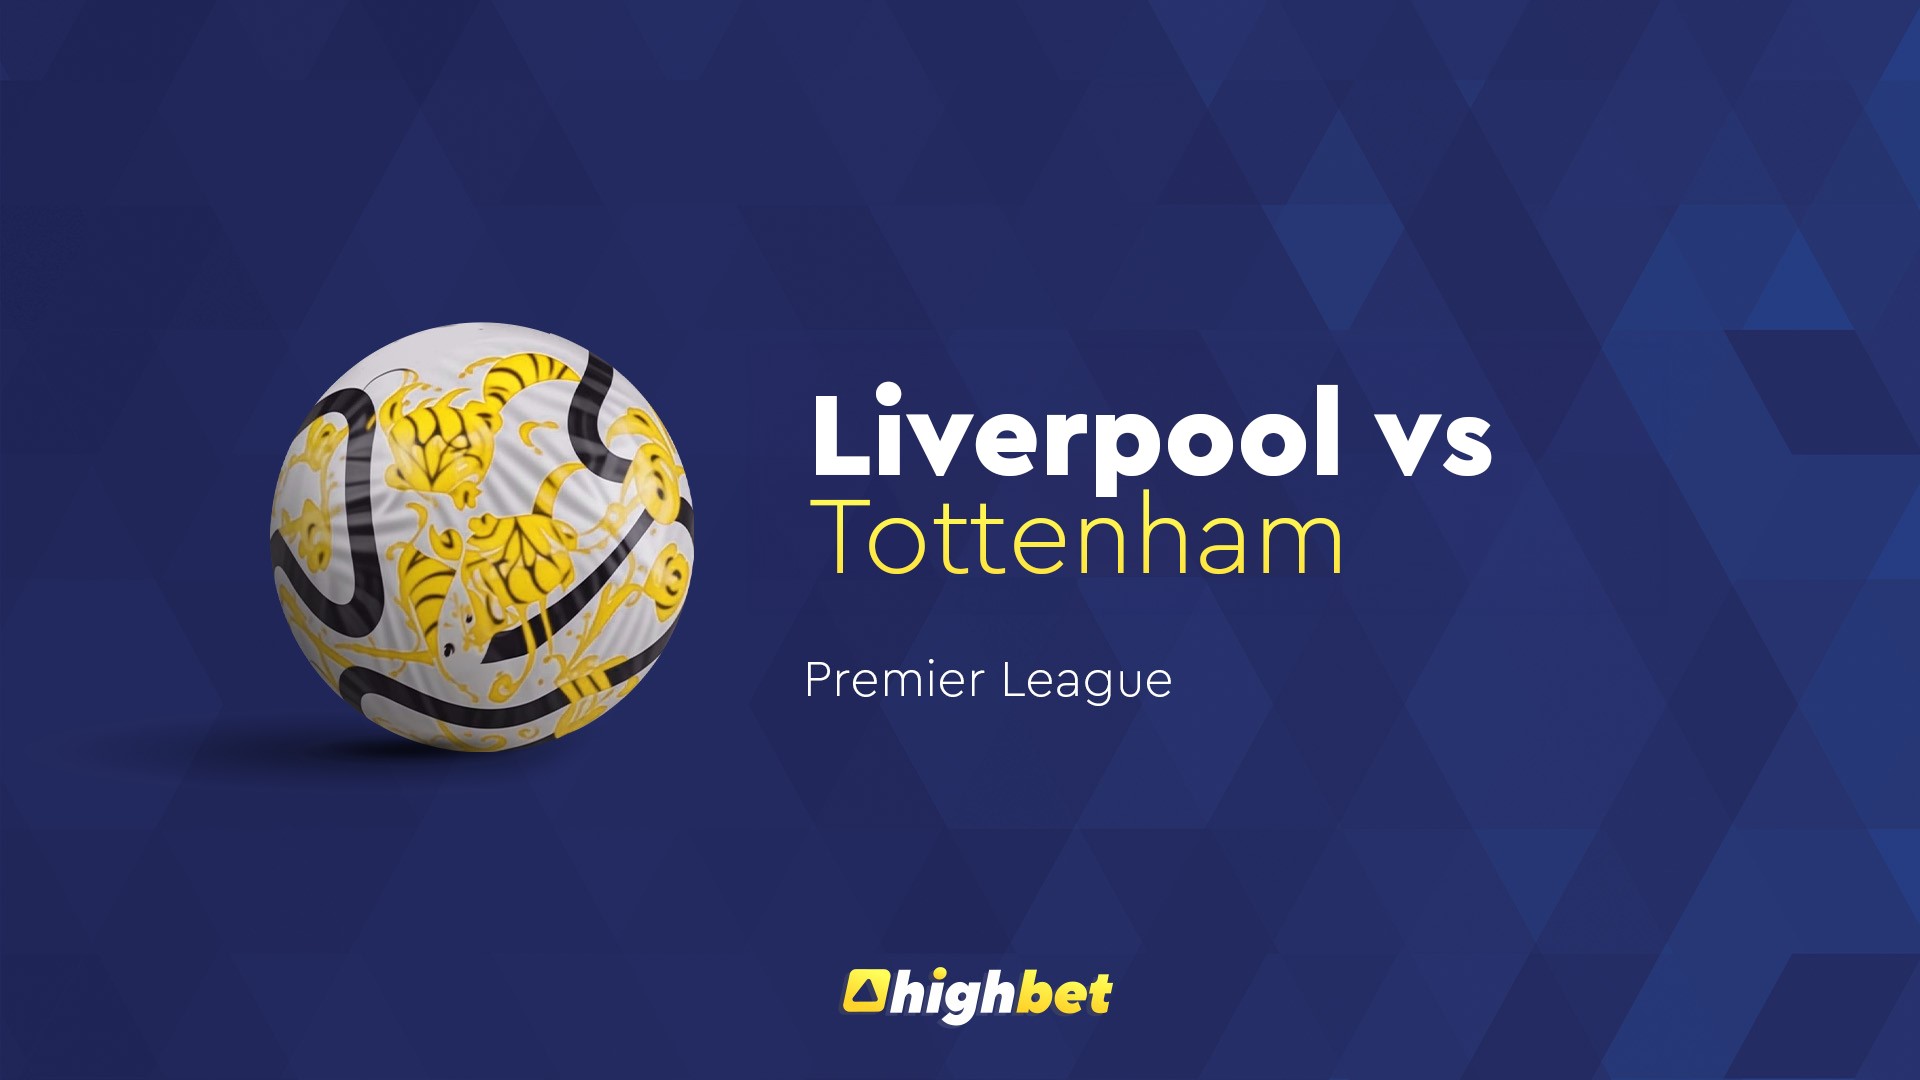 Liverpool vs Tottenham - Highbet Preview - Premier League Prediction